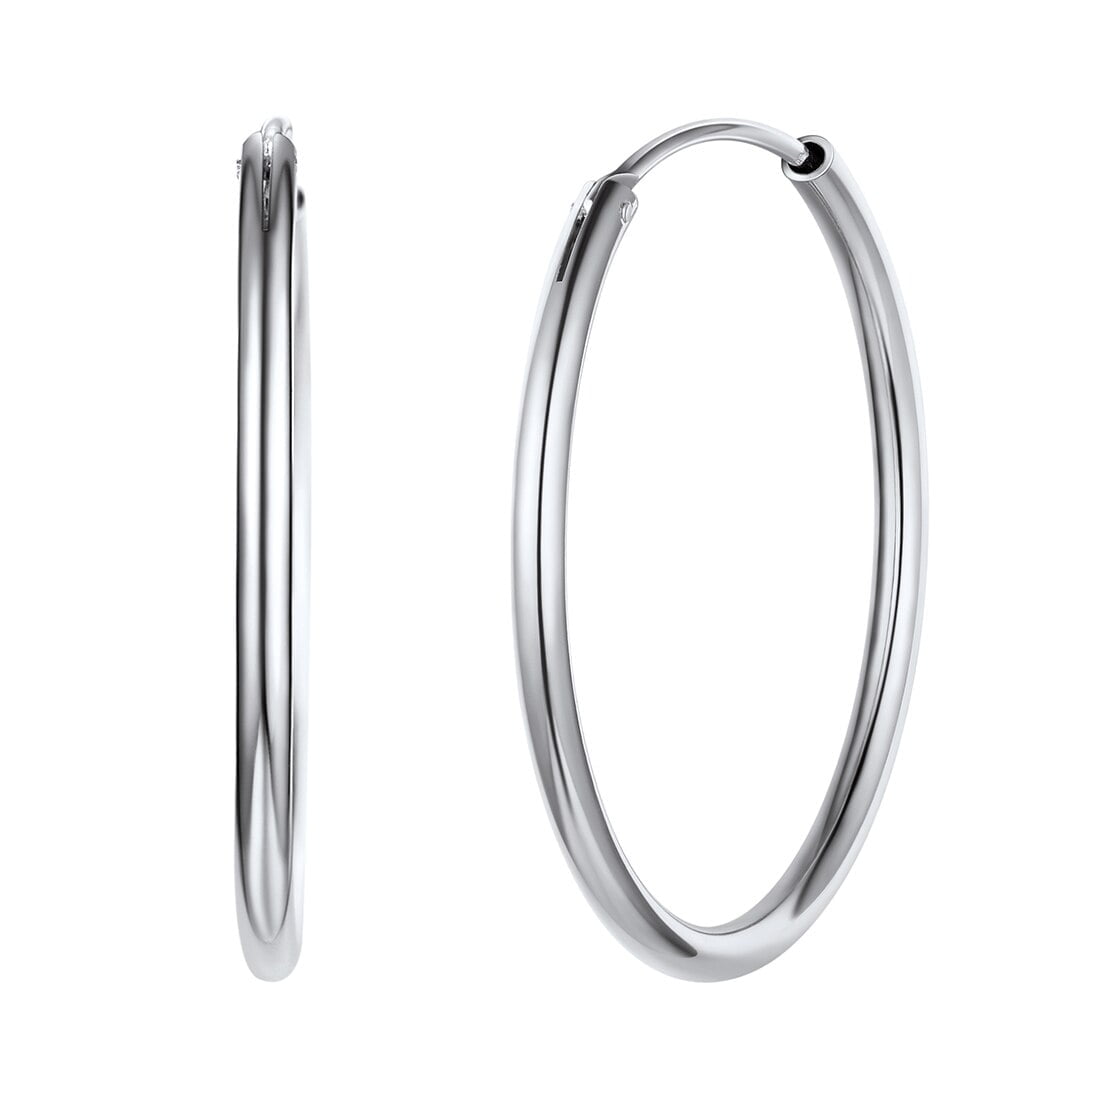 ChicSilver 925 Sterling Silver Hoop Earrings for Women 50mm Big